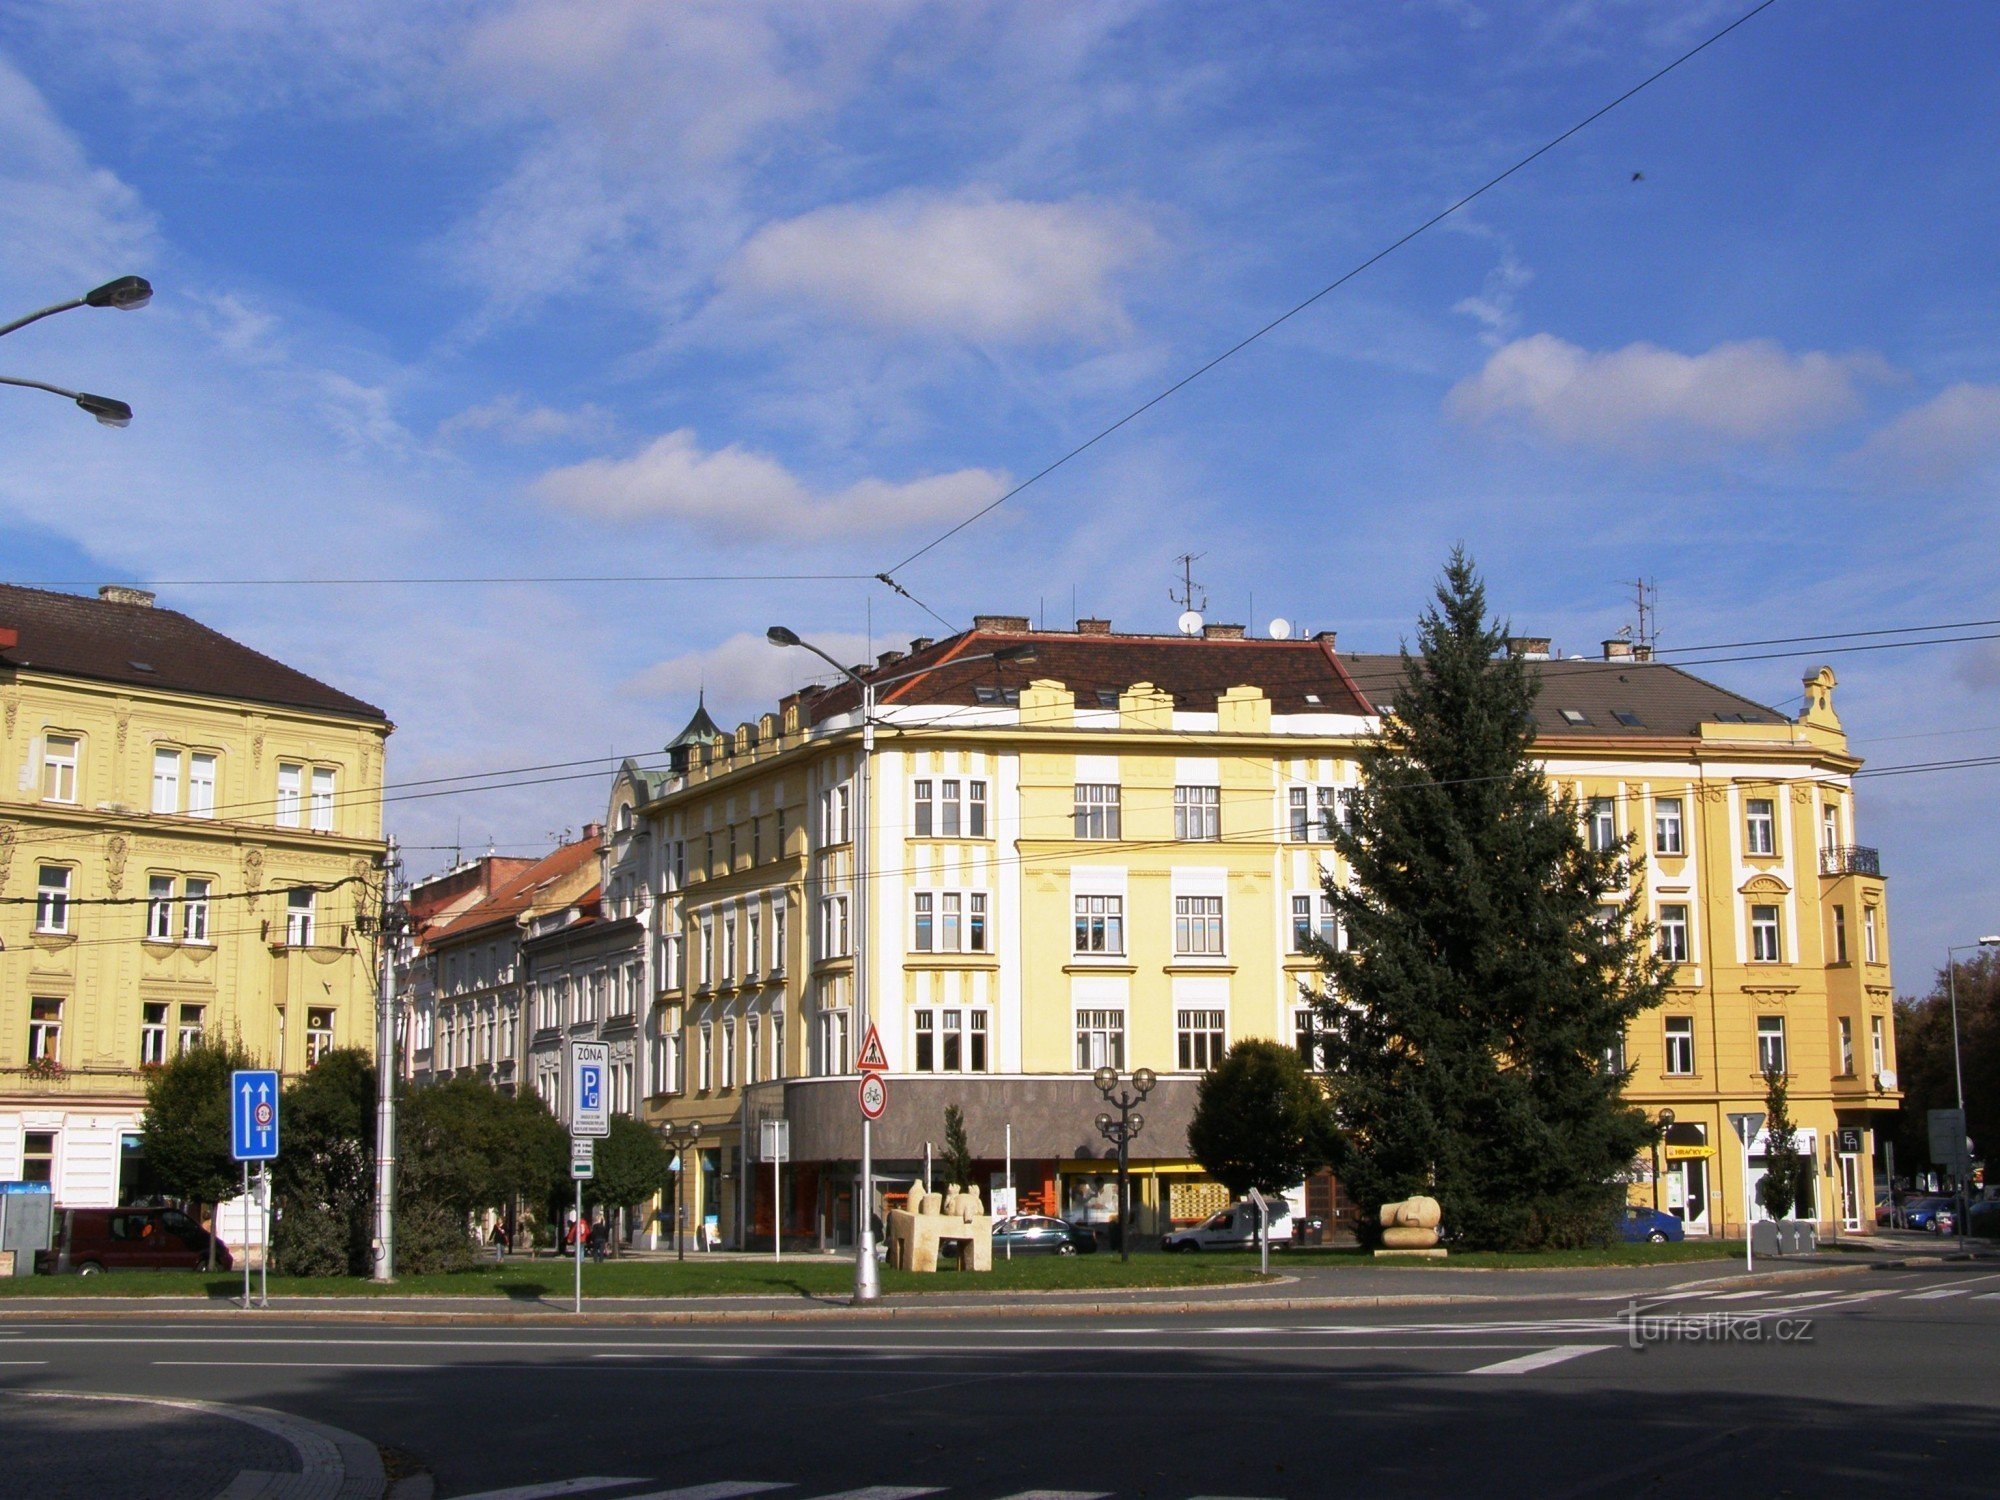 Hradec Králové - Πλατεία Ελευθερίας